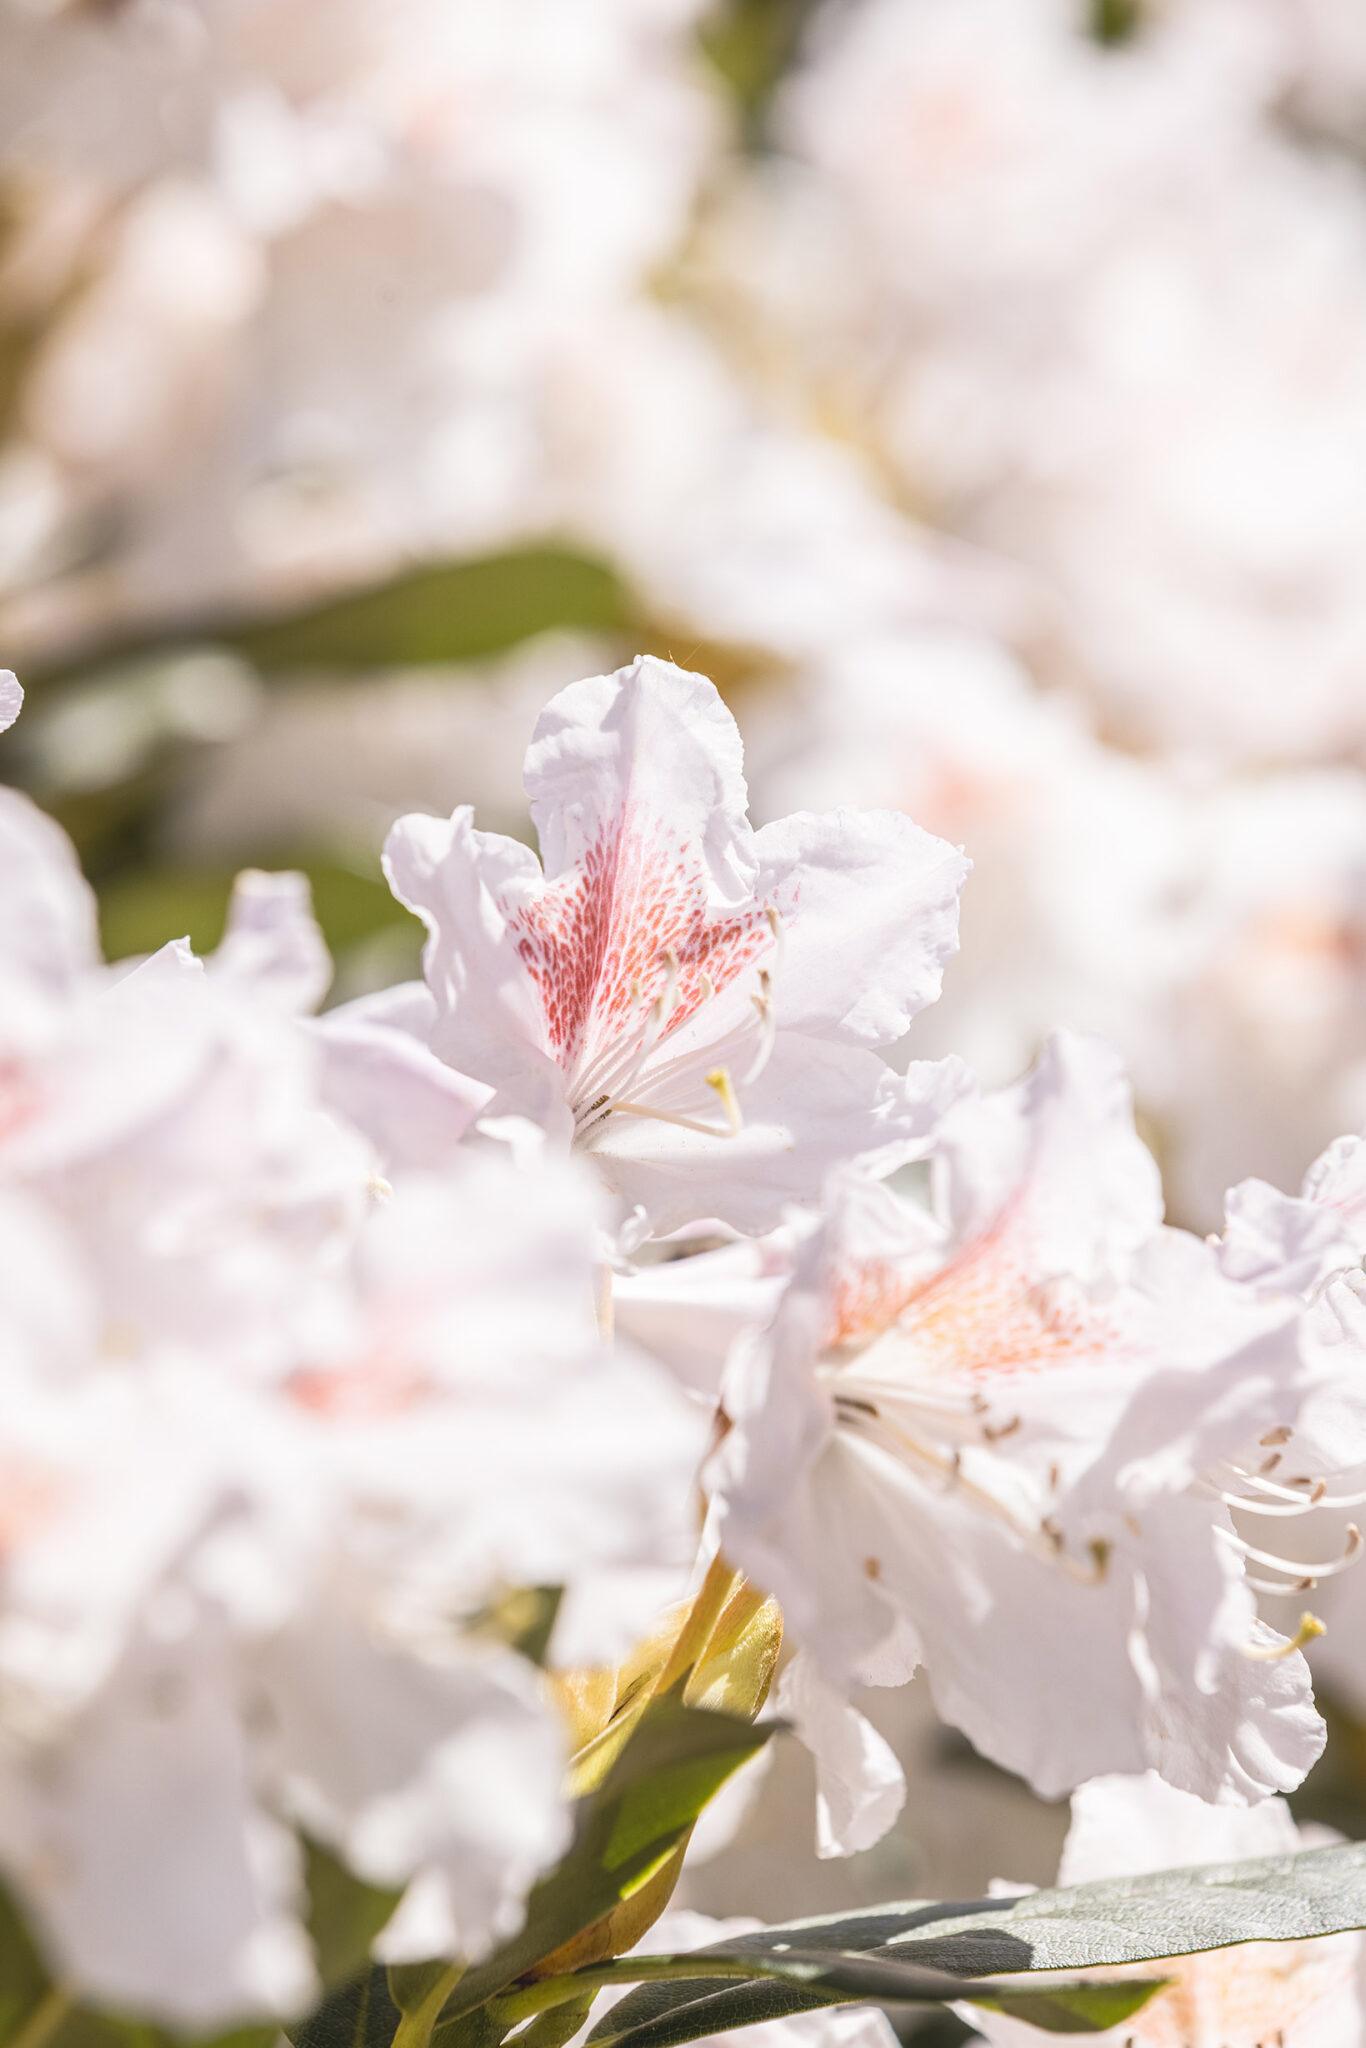 Närbild på en vit blomma med inslag av rosa